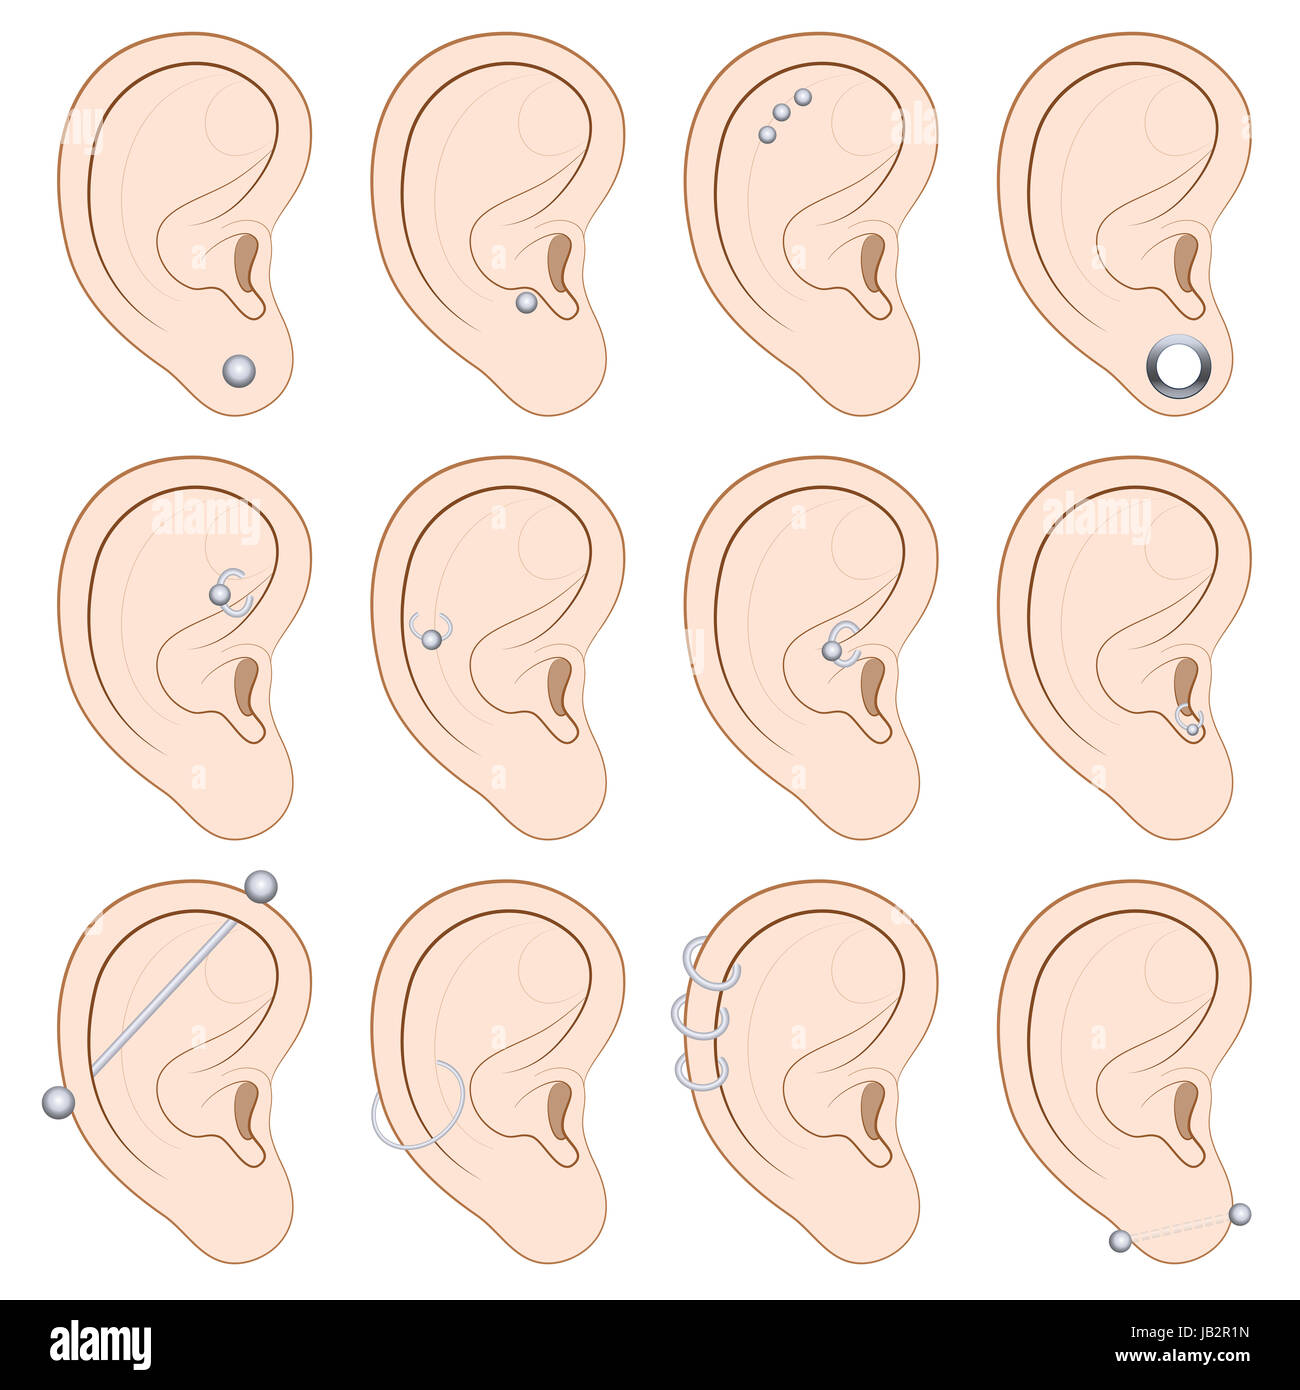 Ear piercing grafico - dodici diversi esempi illustrati su sfondo bianco. Foto Stock